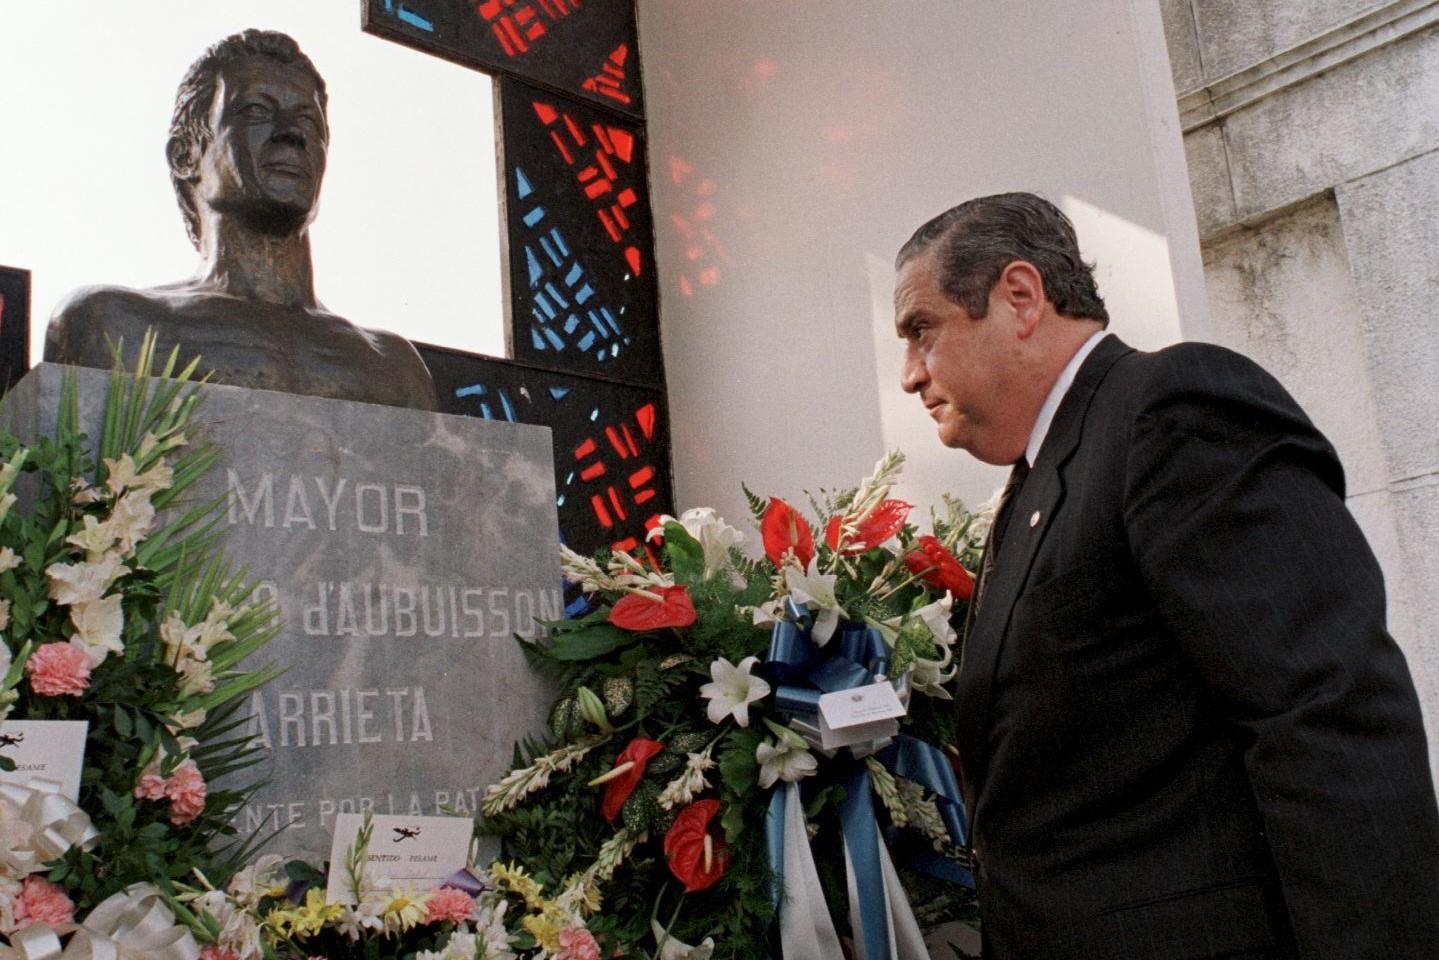 Esta fotografía se tomó el 20 de febrero de 1998 y en ella aparece el entonces presidente de la República, Armando Calderón Sol, colocando una ofrenda floral en la tumba del mayor Roberto d